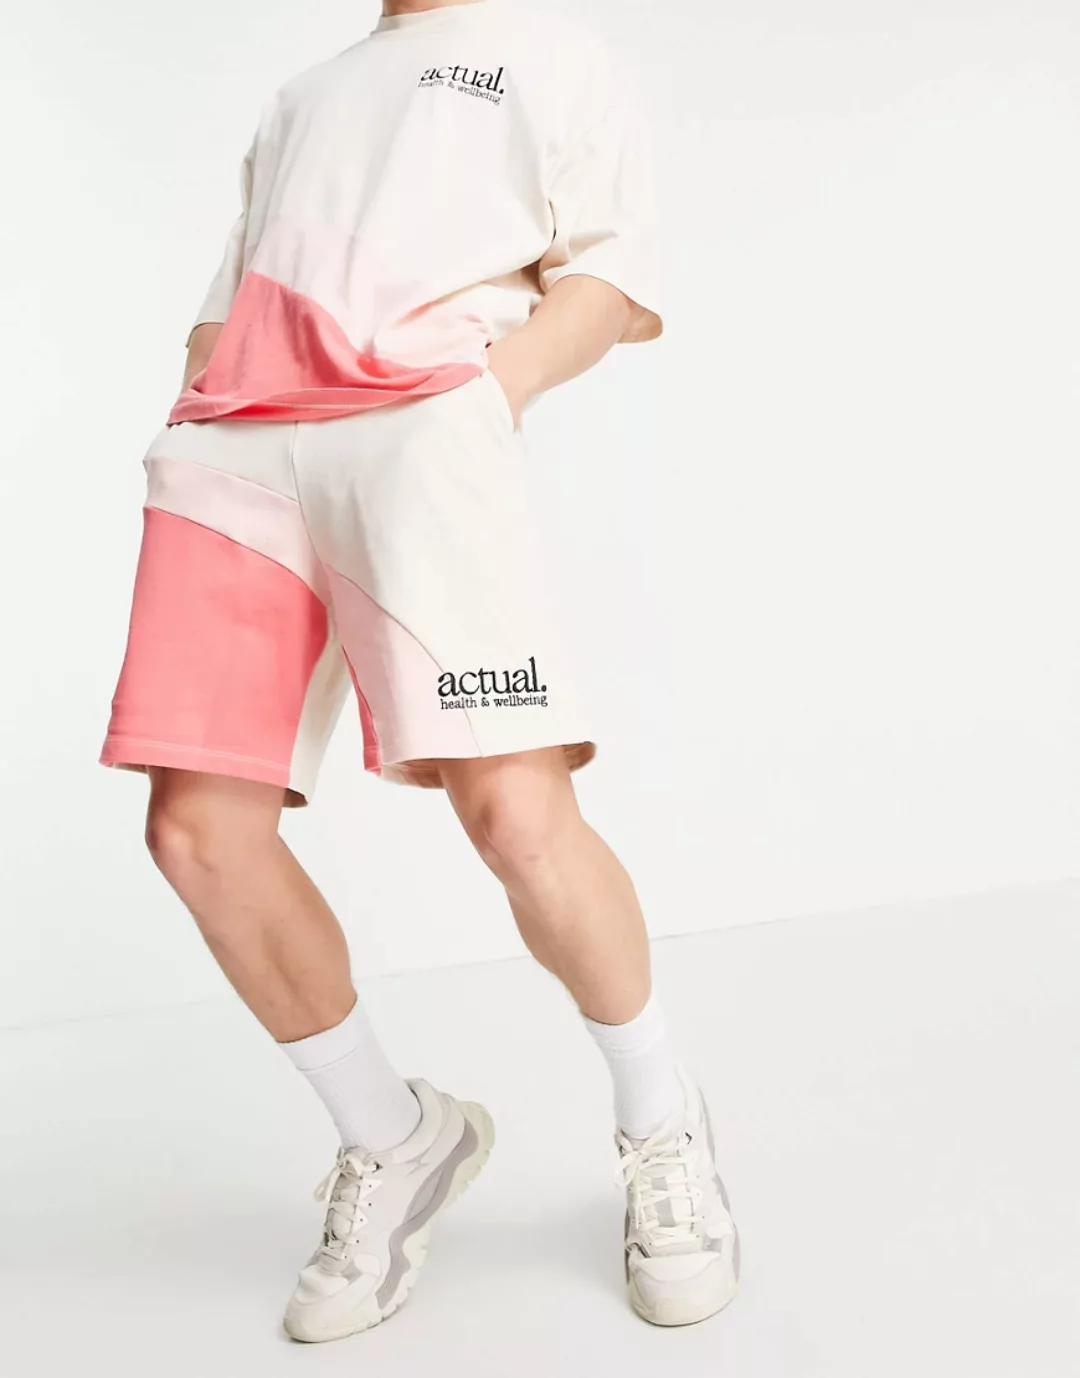 ASOS Actual – Shorts in Rosa mit geschwungenem Blockfarbendetail, Kombiteil günstig online kaufen